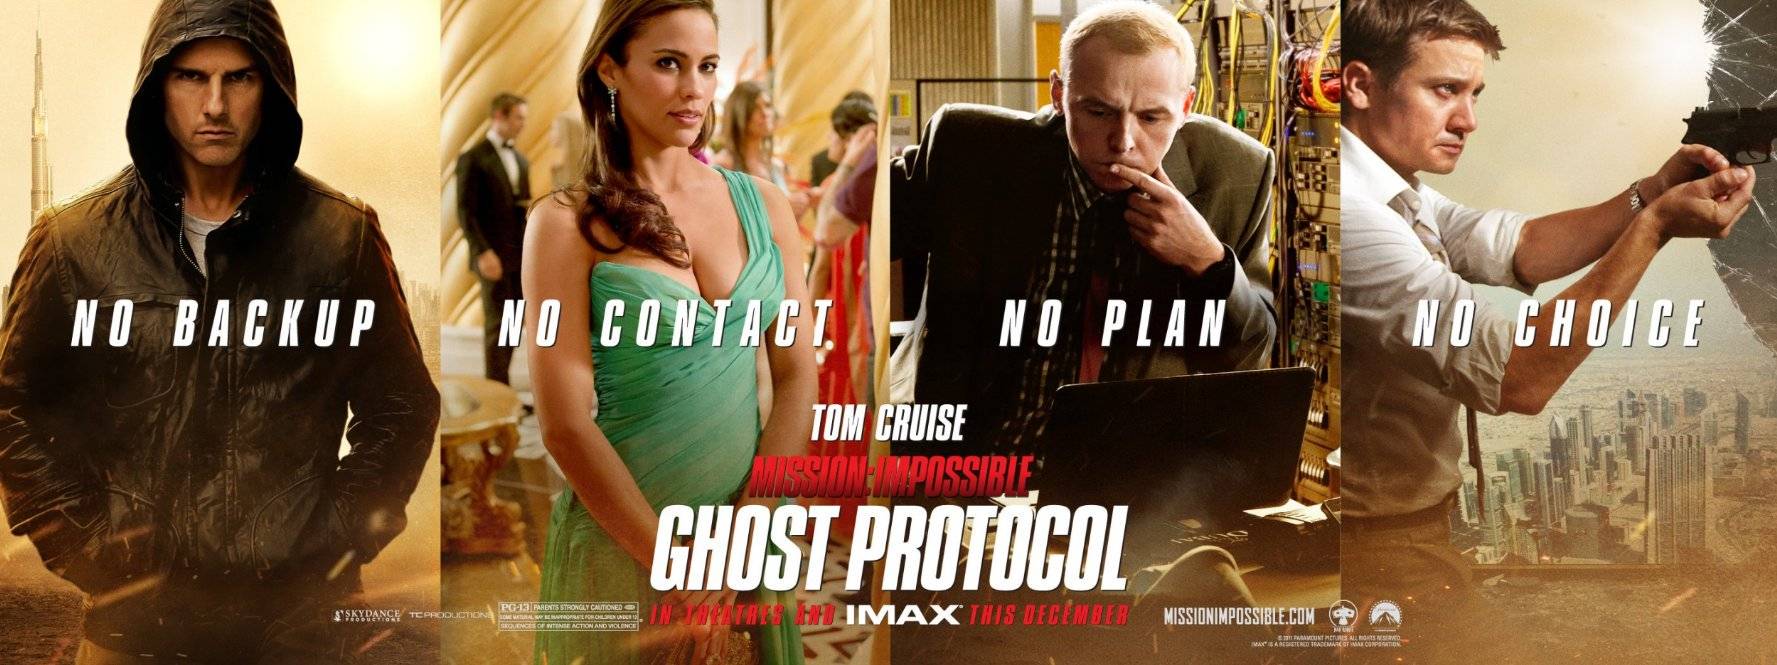 Xem Phim Nhiệm Vụ Bất Khả Thi 4: Chiến Dịch Bóng Ma, Mission Impossible: Ghost Protocol 2011